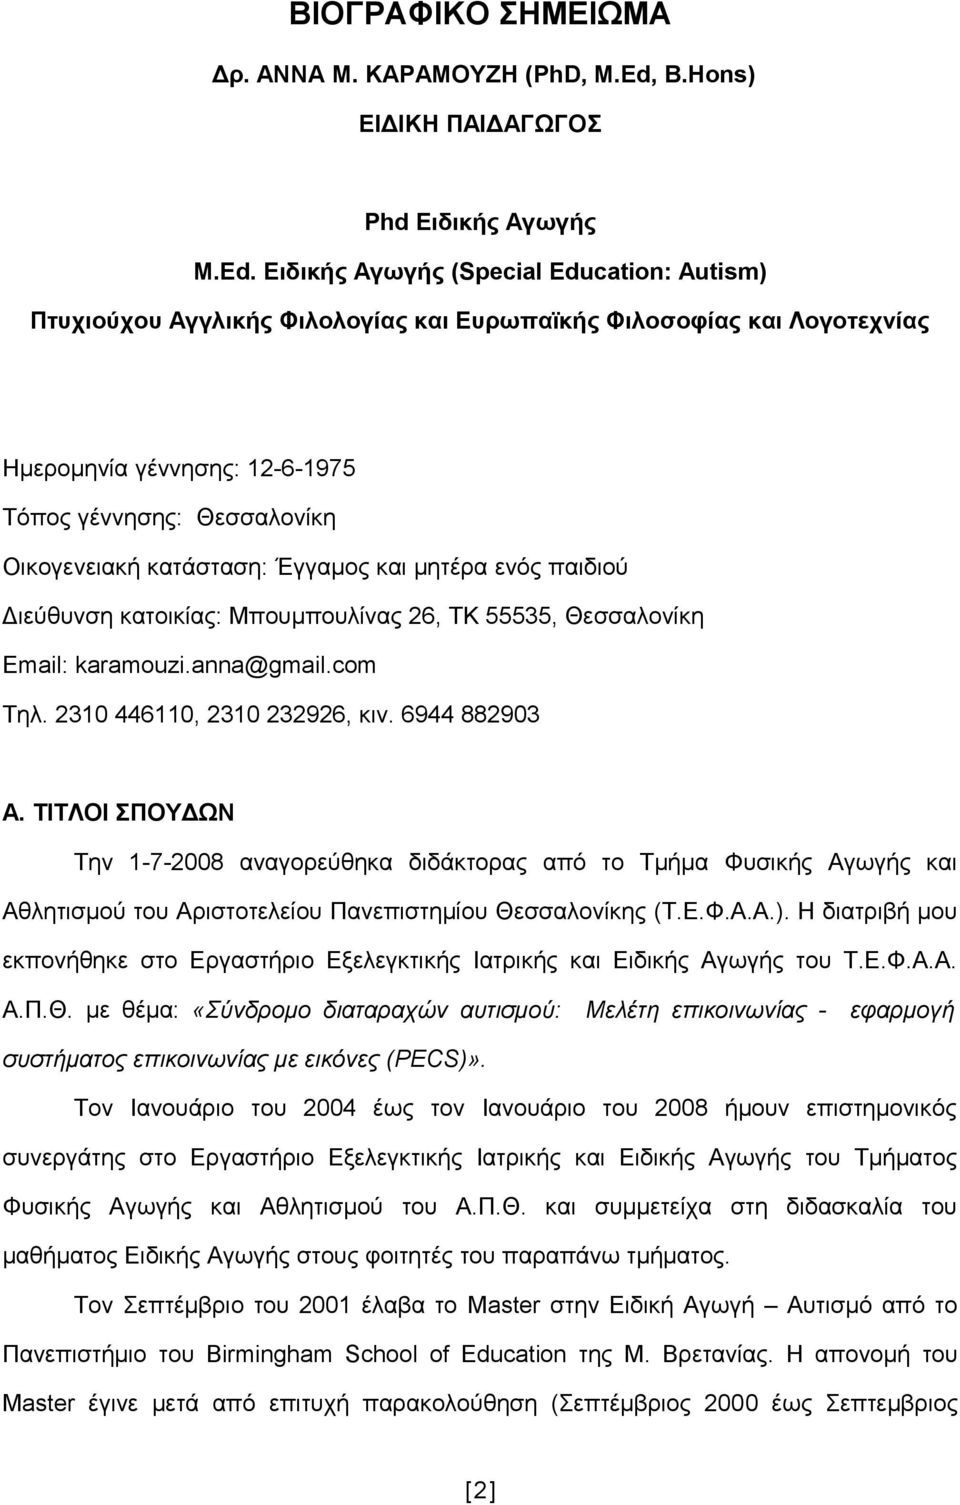 Ειδικής Αγωγής (Special Education: Autism) Πτυχιούχου Αγγλικής Φιλολογίας και Ευρωπαϊκής Φιλοσοφίας και Λογοτεχνίας Ημερομηνία γέννησης: 12-6-1975 Τόπος γέννησης: Θεσσαλονίκη Οικογενειακή κατάσταση: